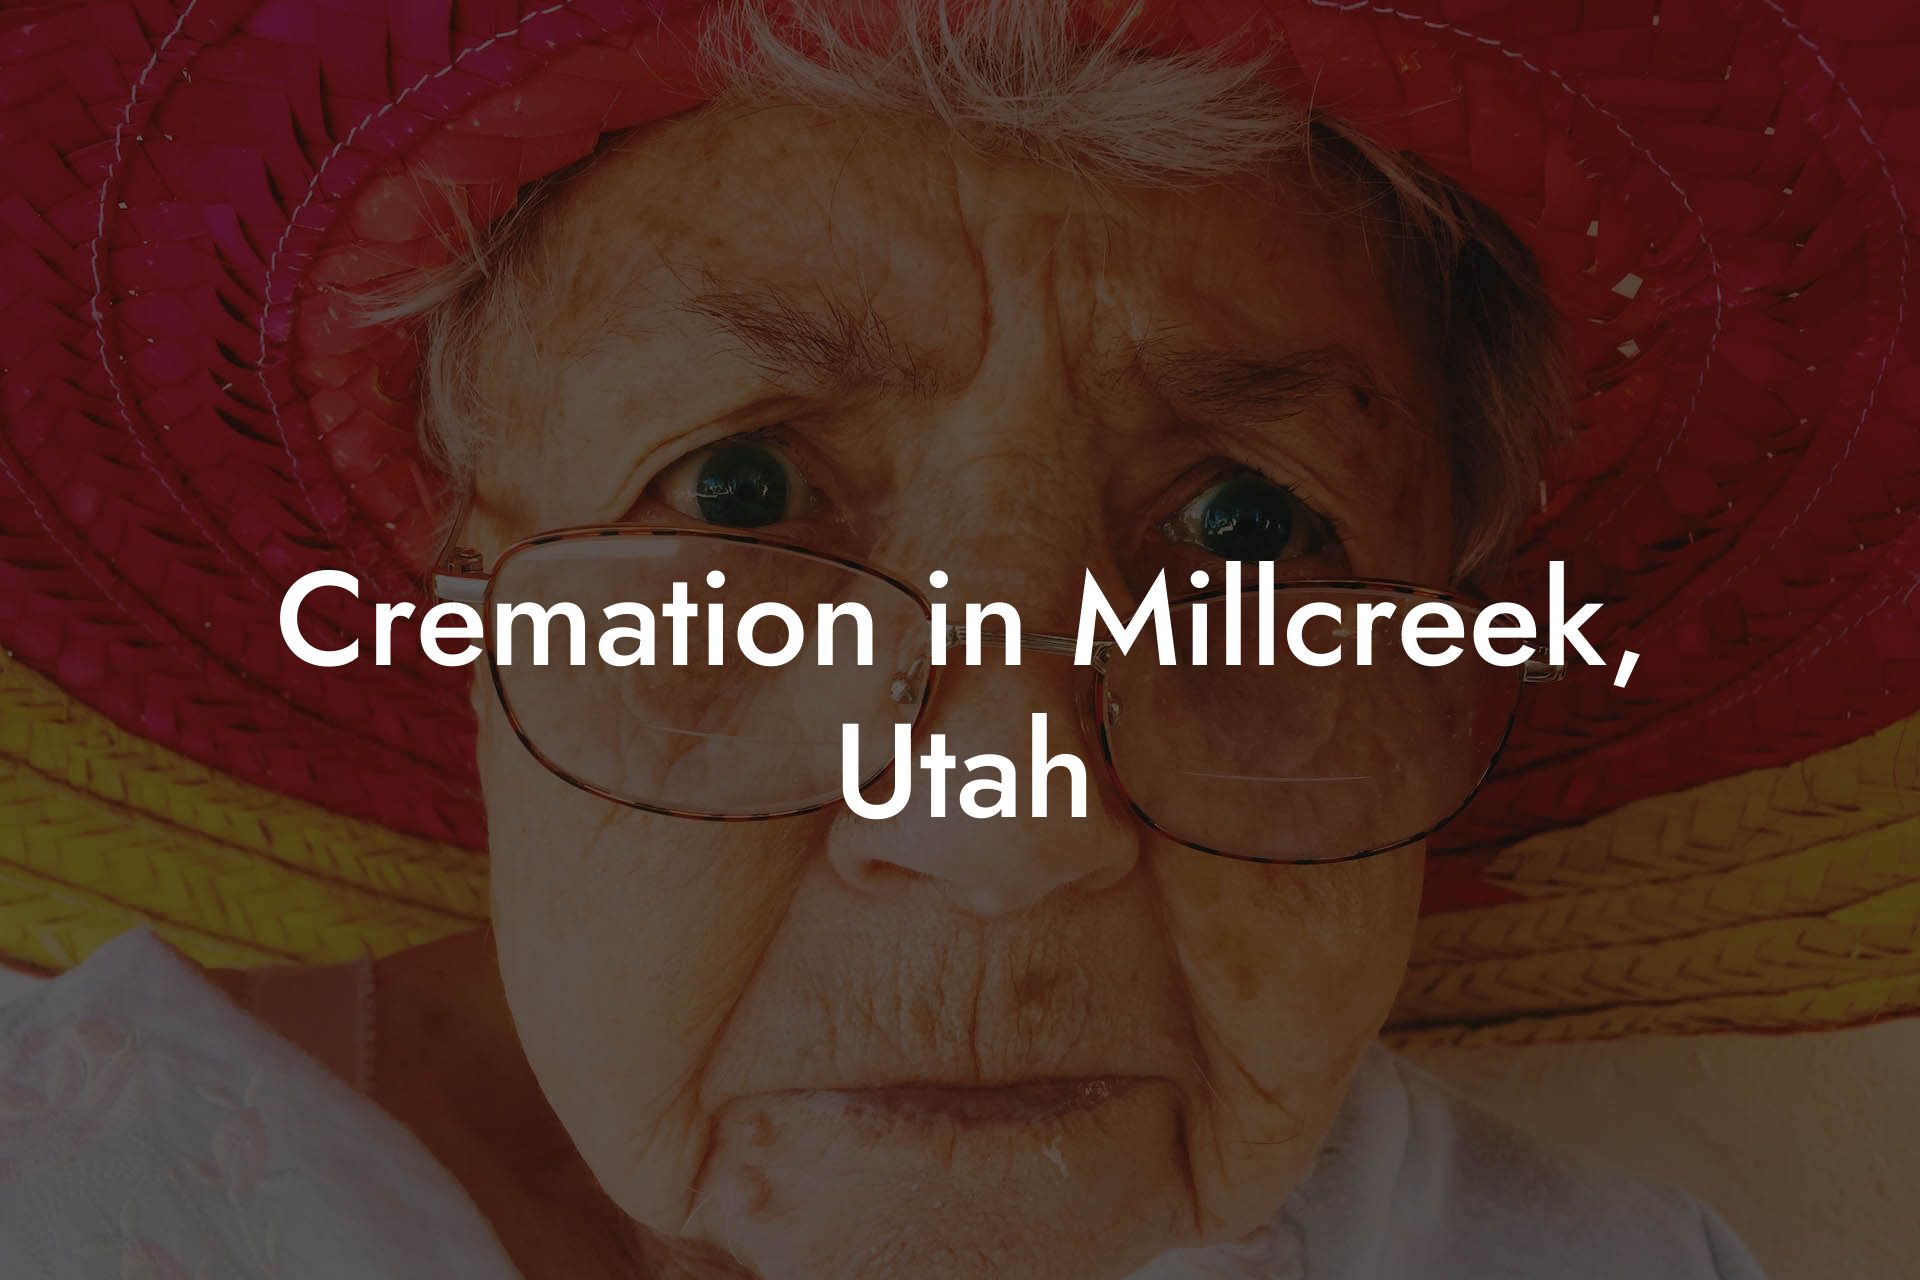 Cremation in Millcreek, Utah